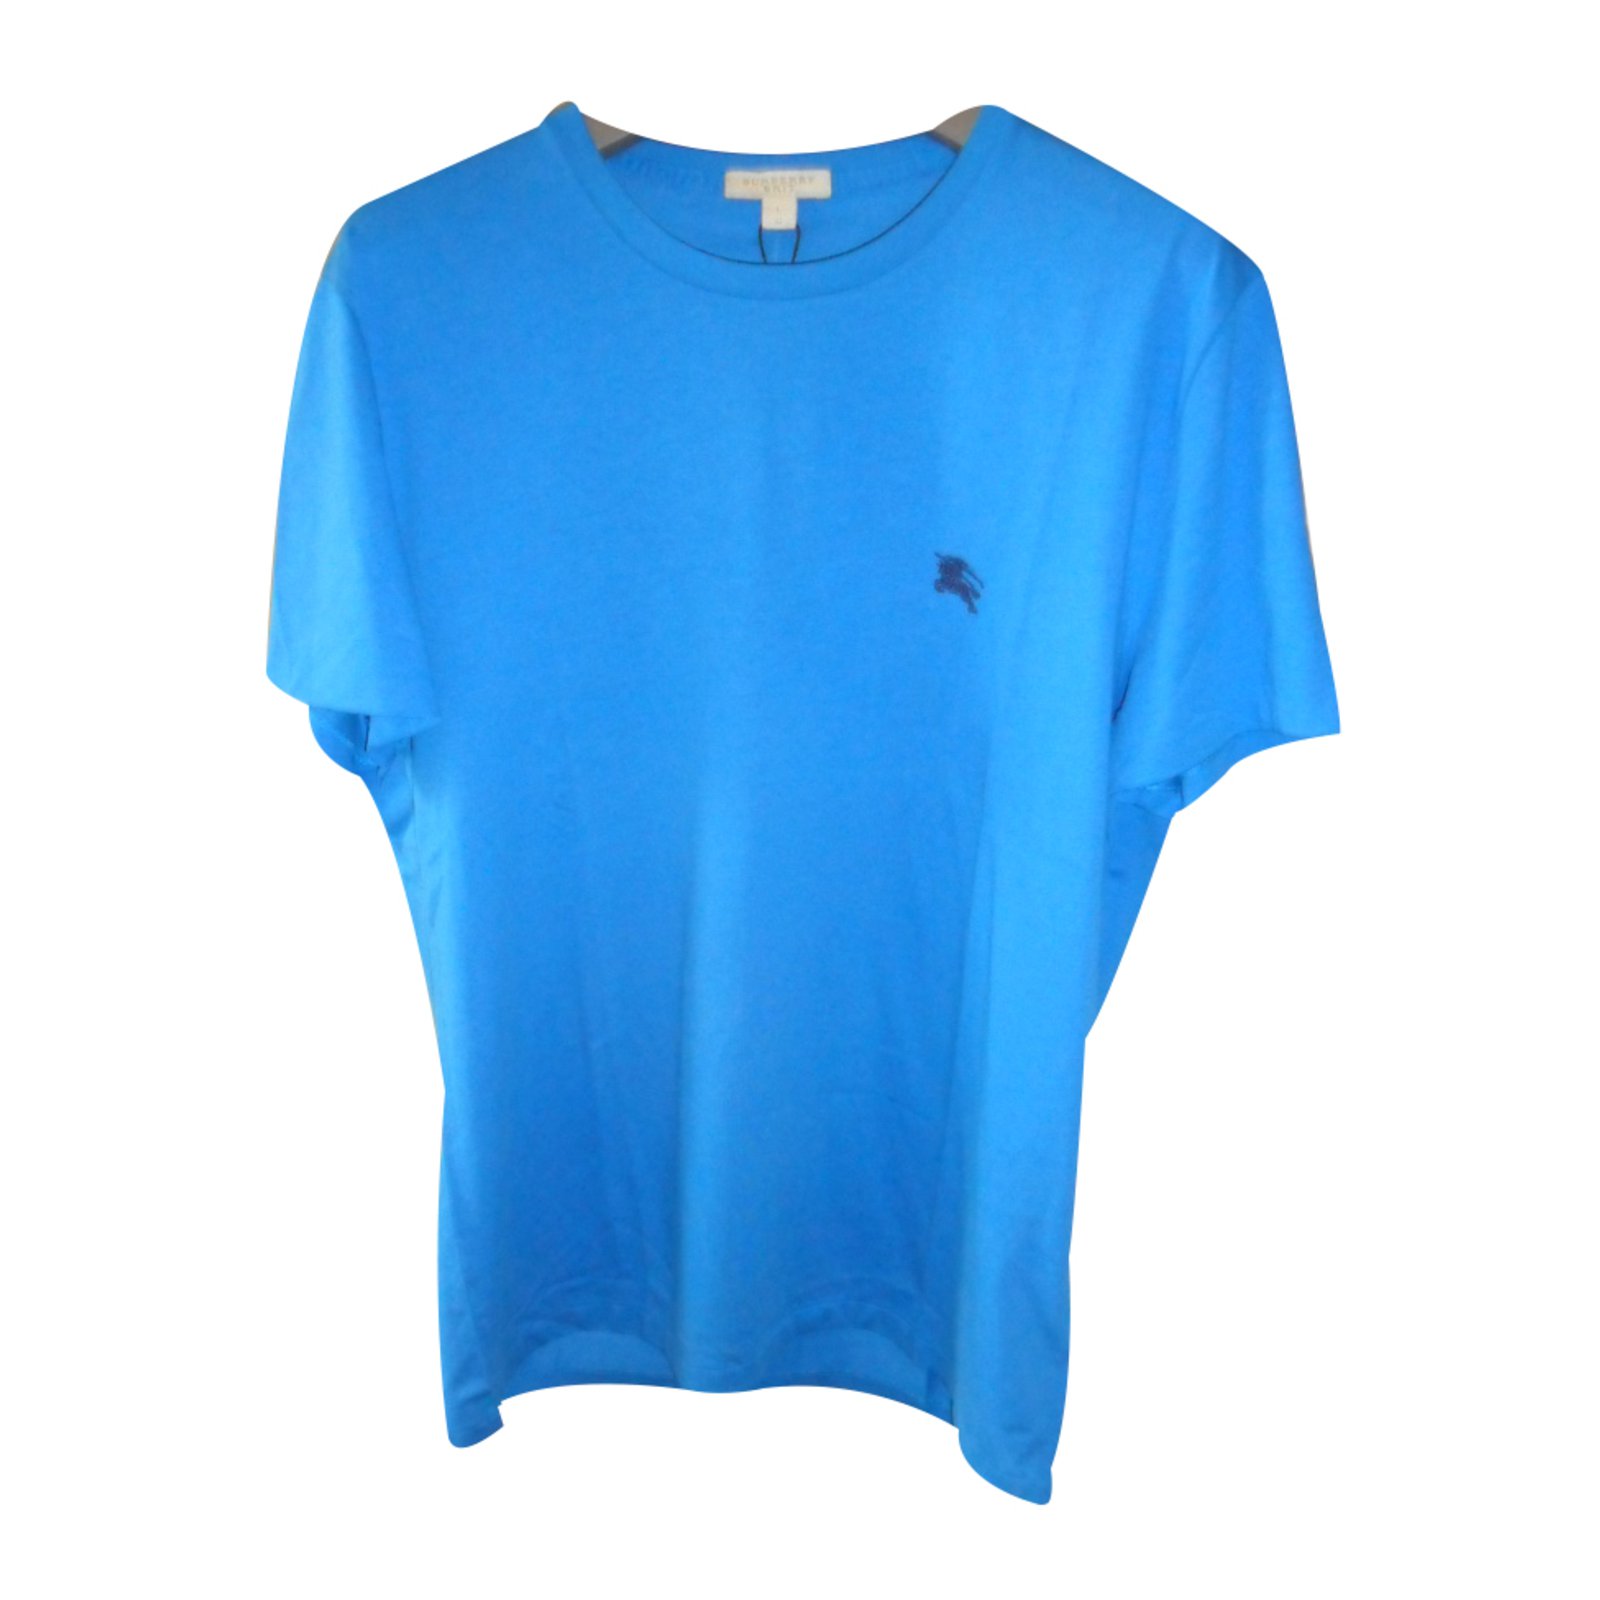 blue burberry shirt